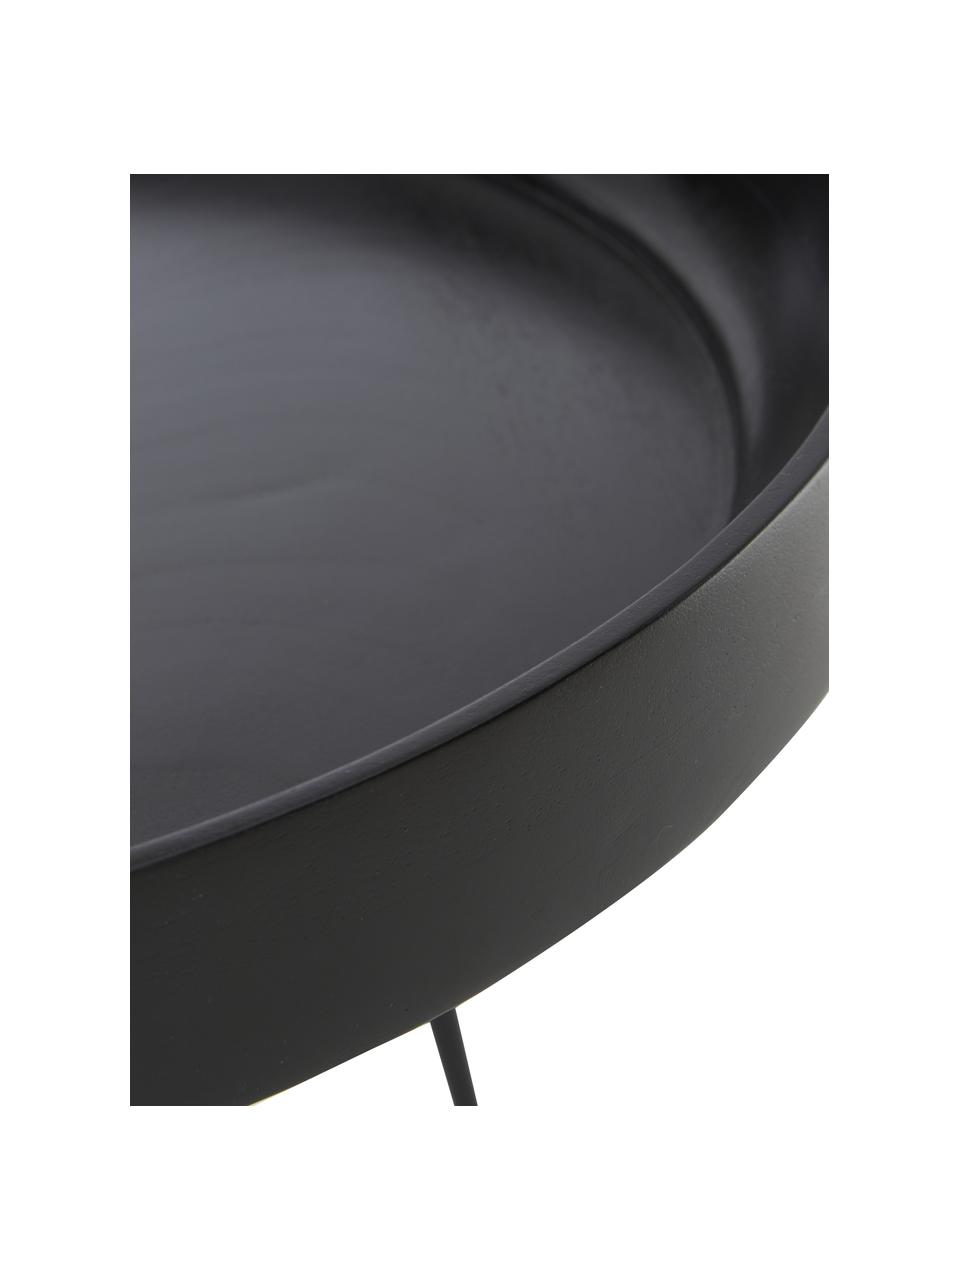 Runder Beistelltisch Bowl aus Mangoholz, Tischplatte: Mangoholz, lackiert, Beine: Stahl, pulverbeschichtet, Mangoholz, schwarz lackiert, Ø 53 x H 46 cm